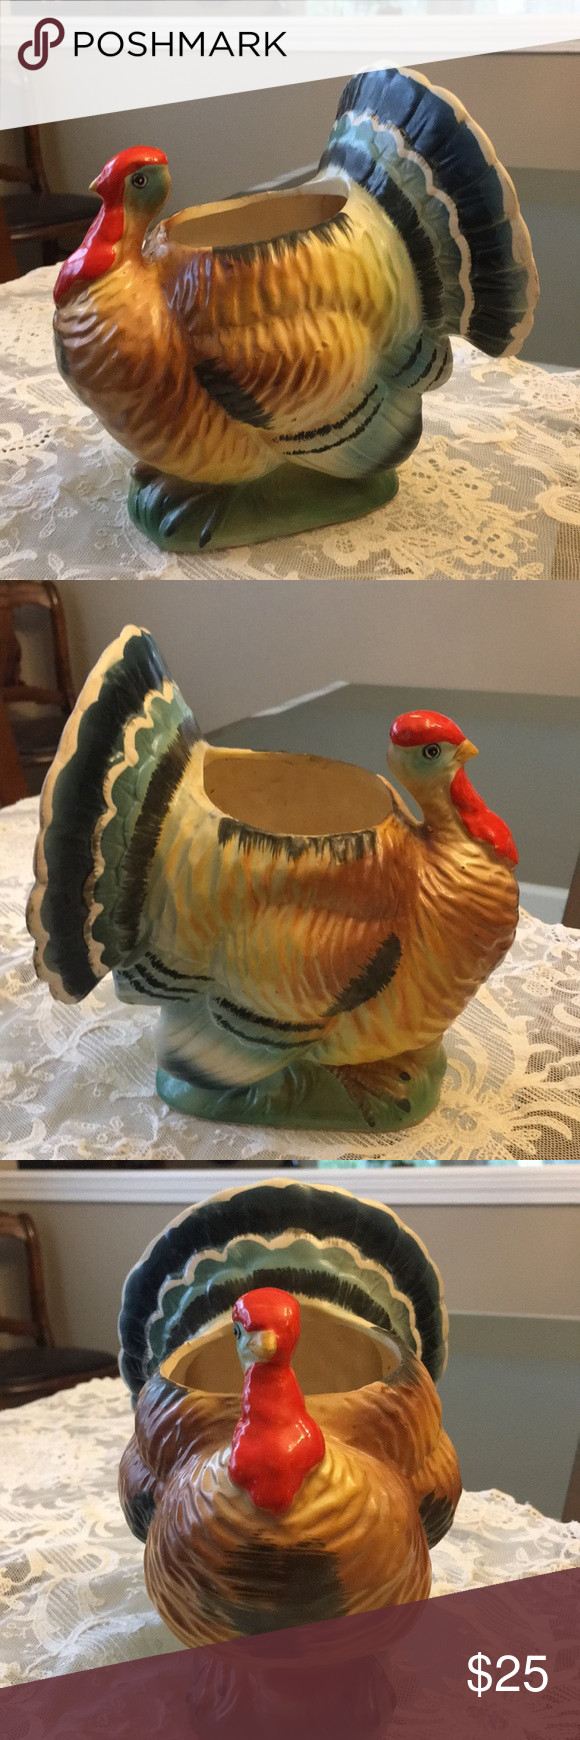 Turkey Prices For Thanksgiving 2020
 THANKSGIVING Turkey Vase in 2020